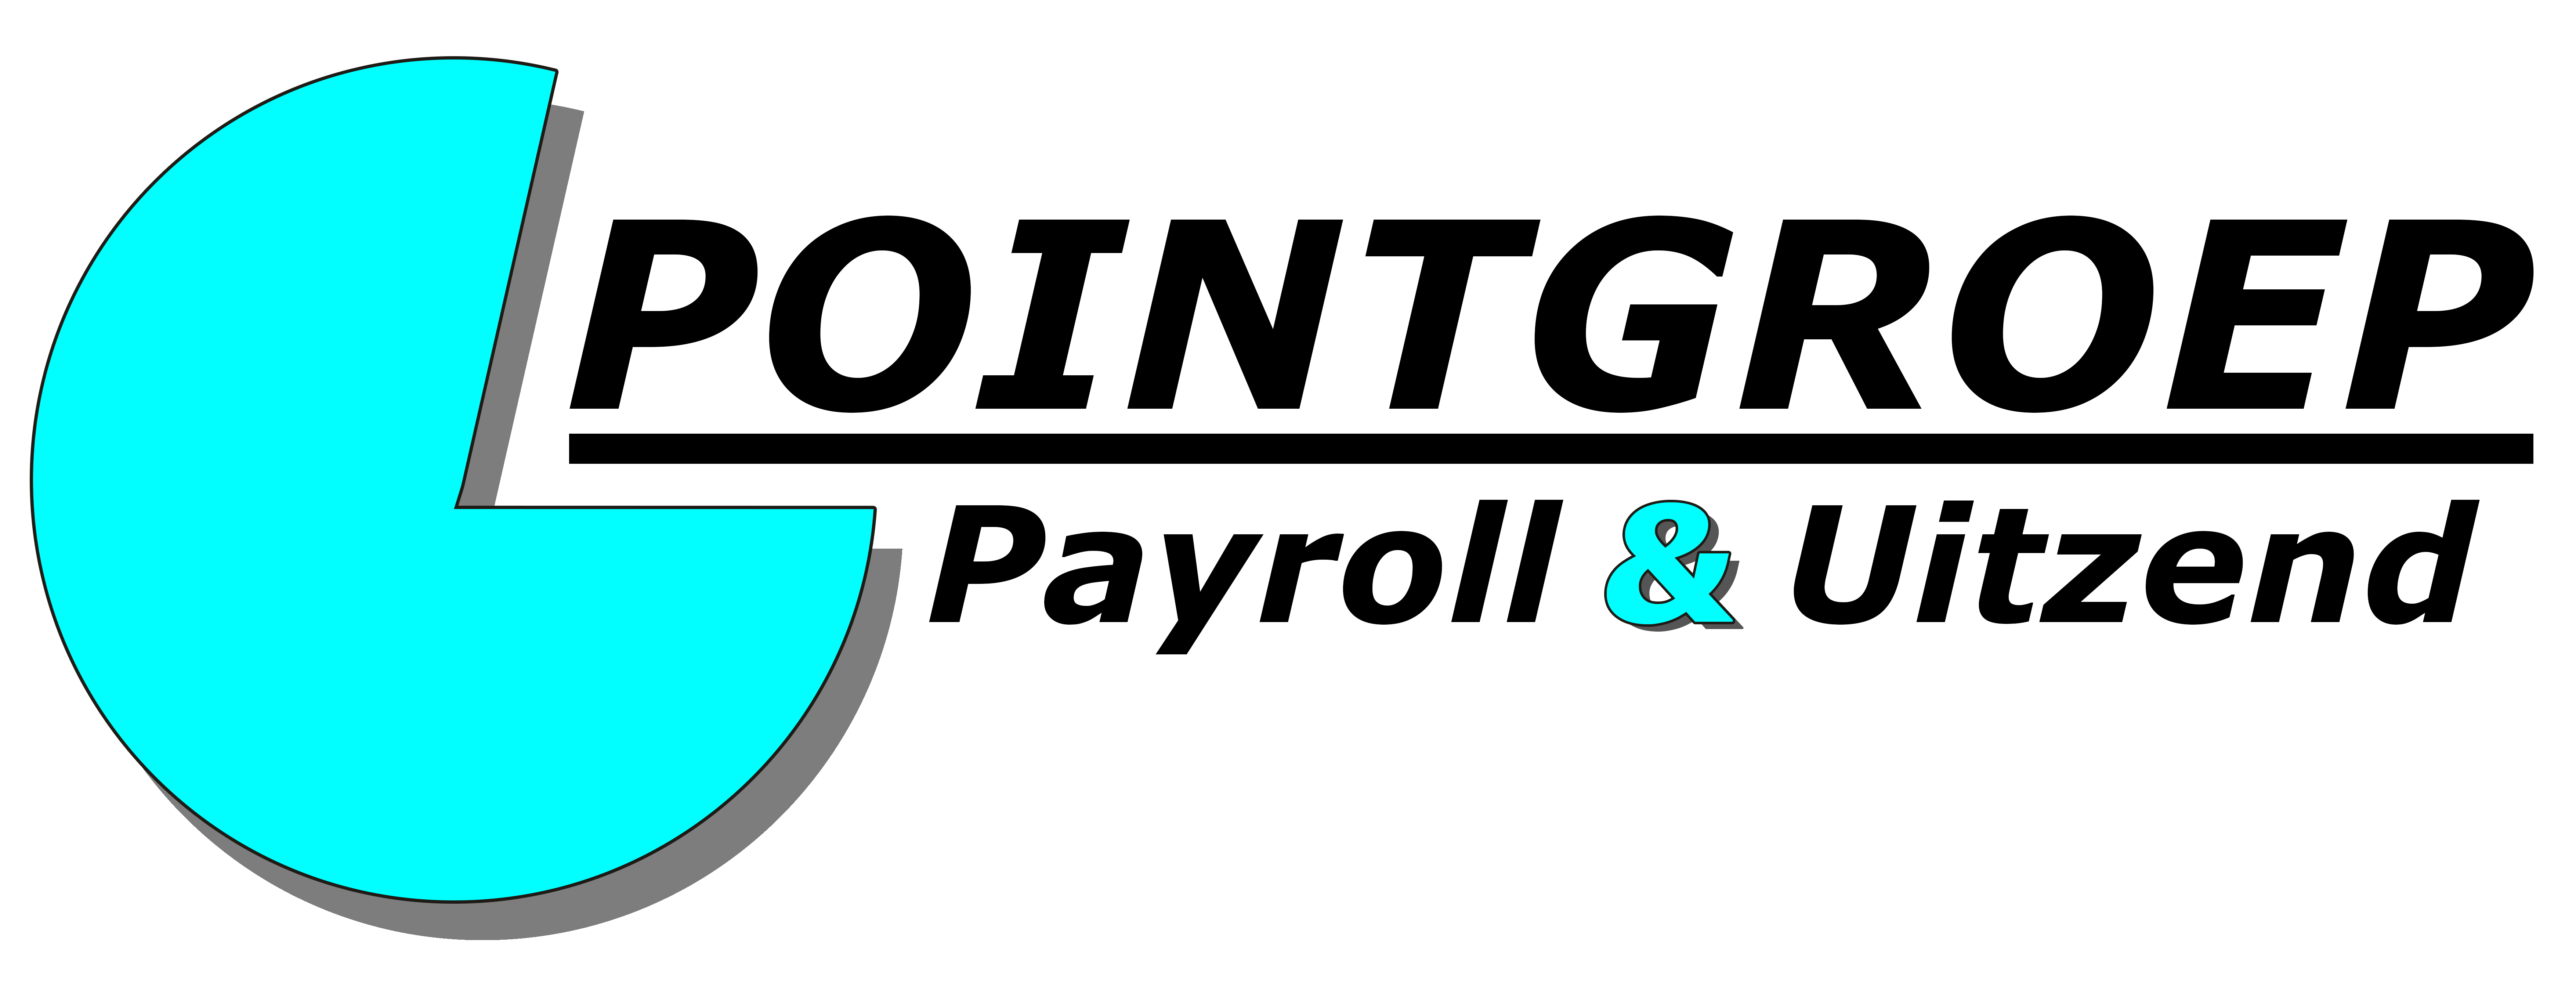 Pointgroep Payroll & Uitzend